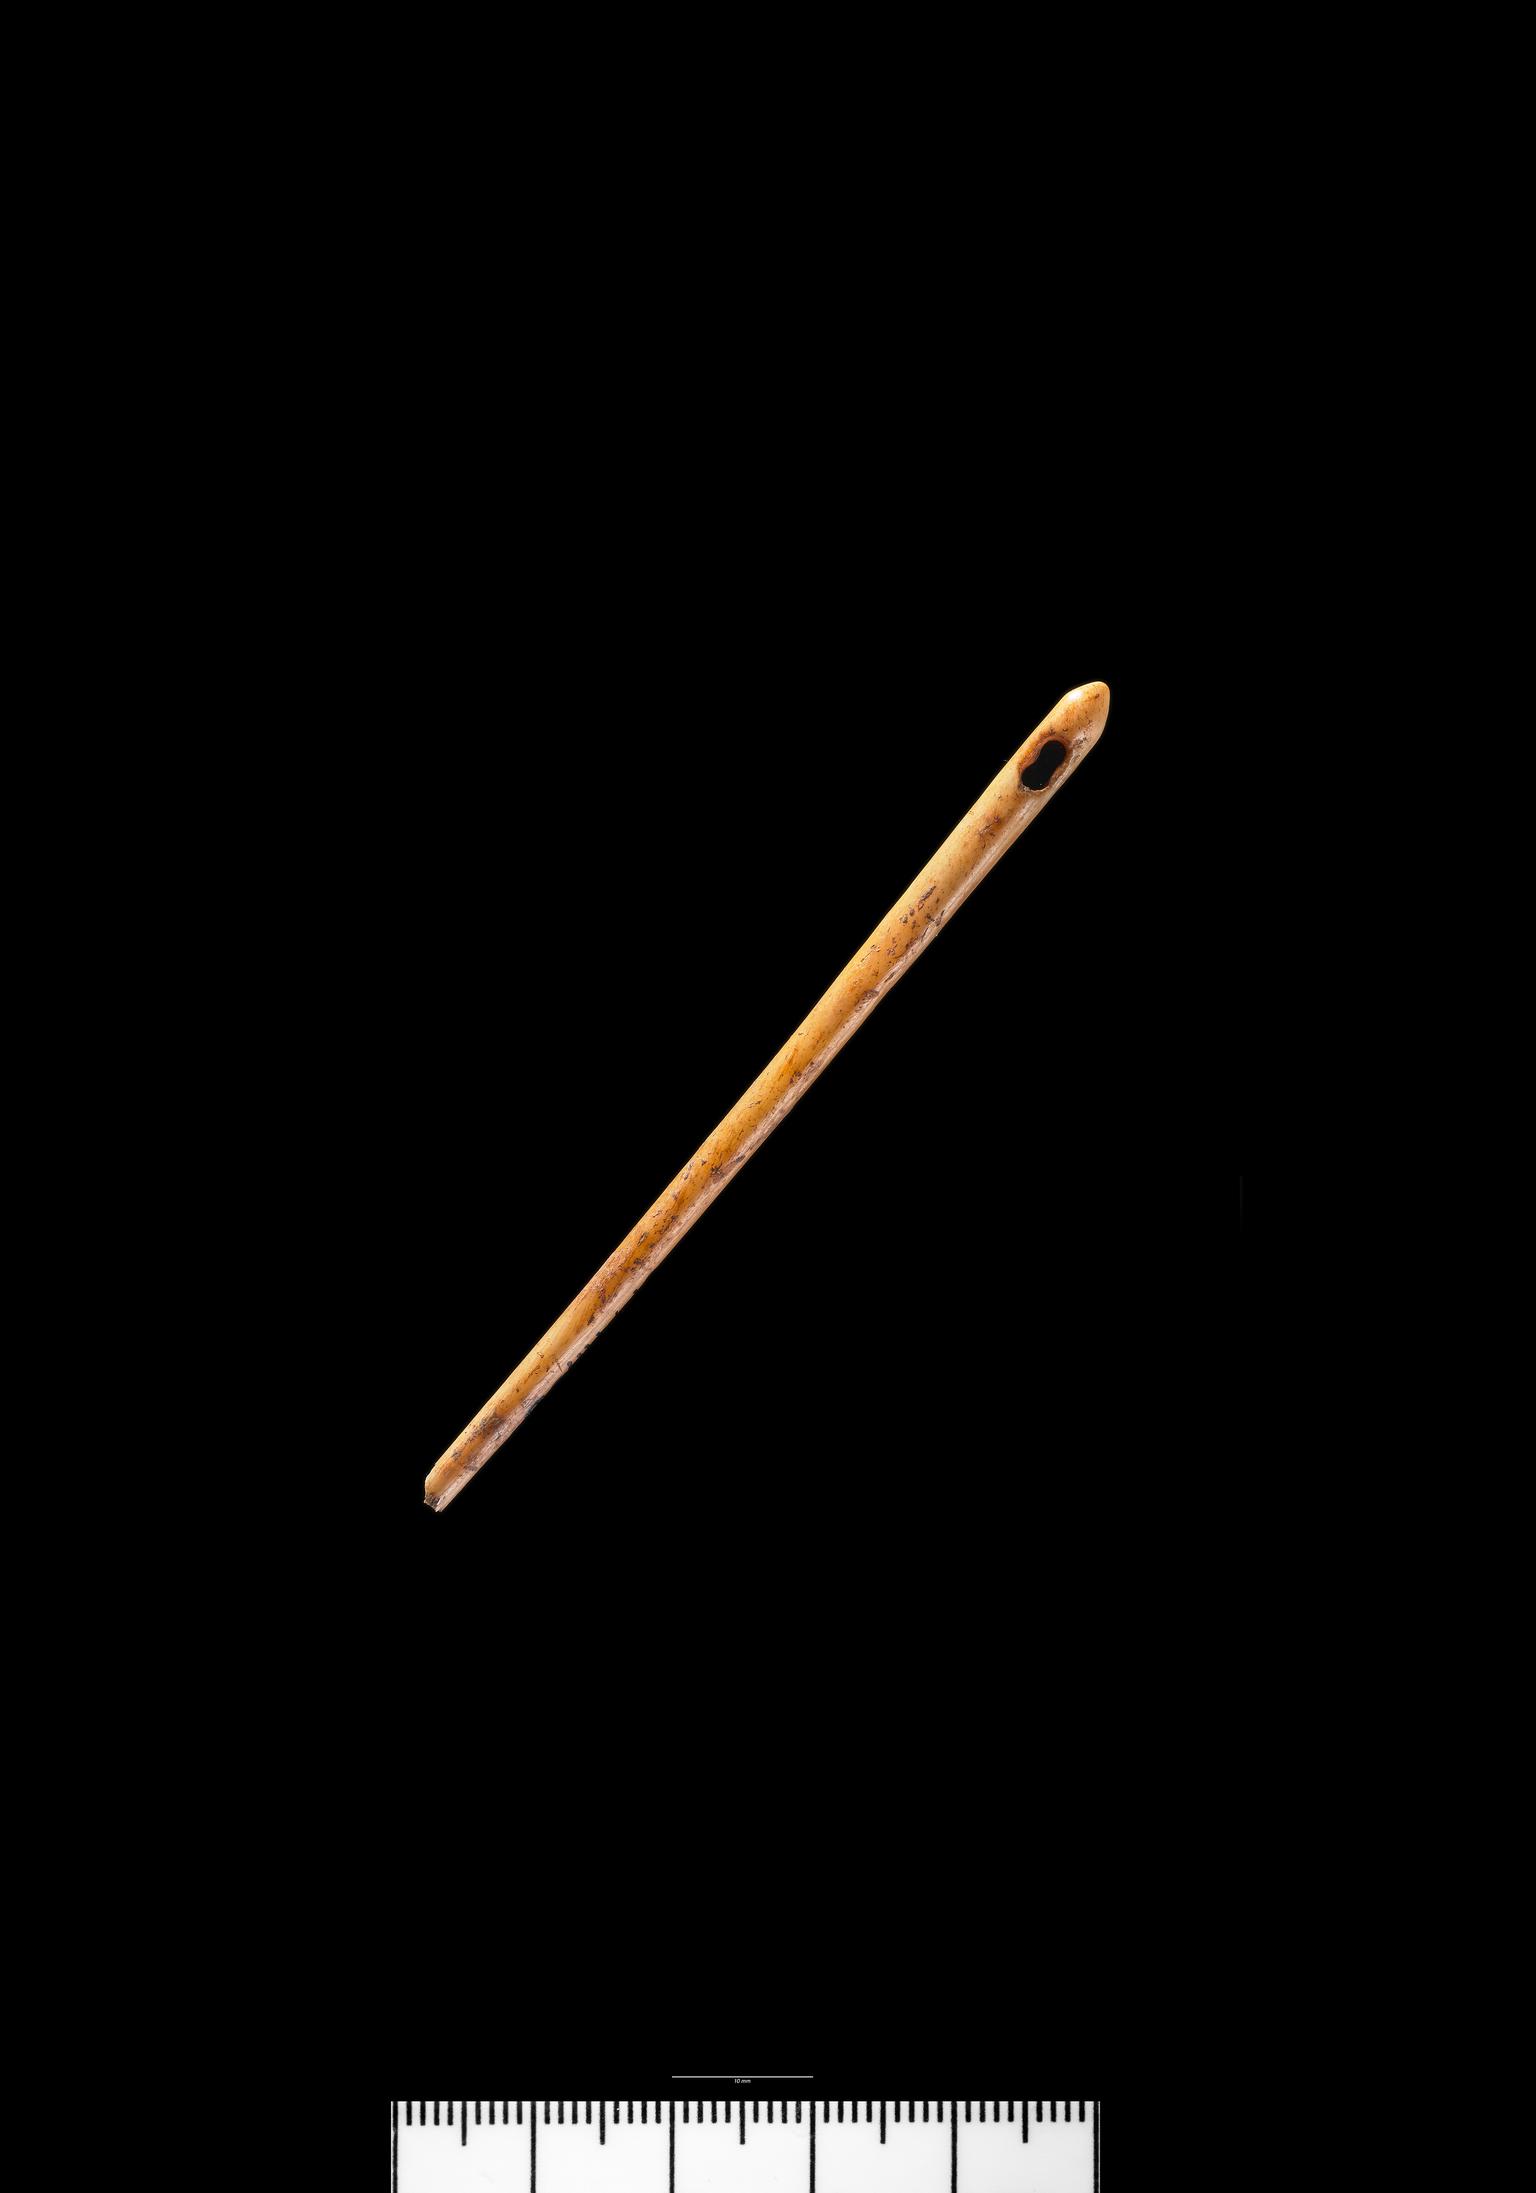 Roman bone needle